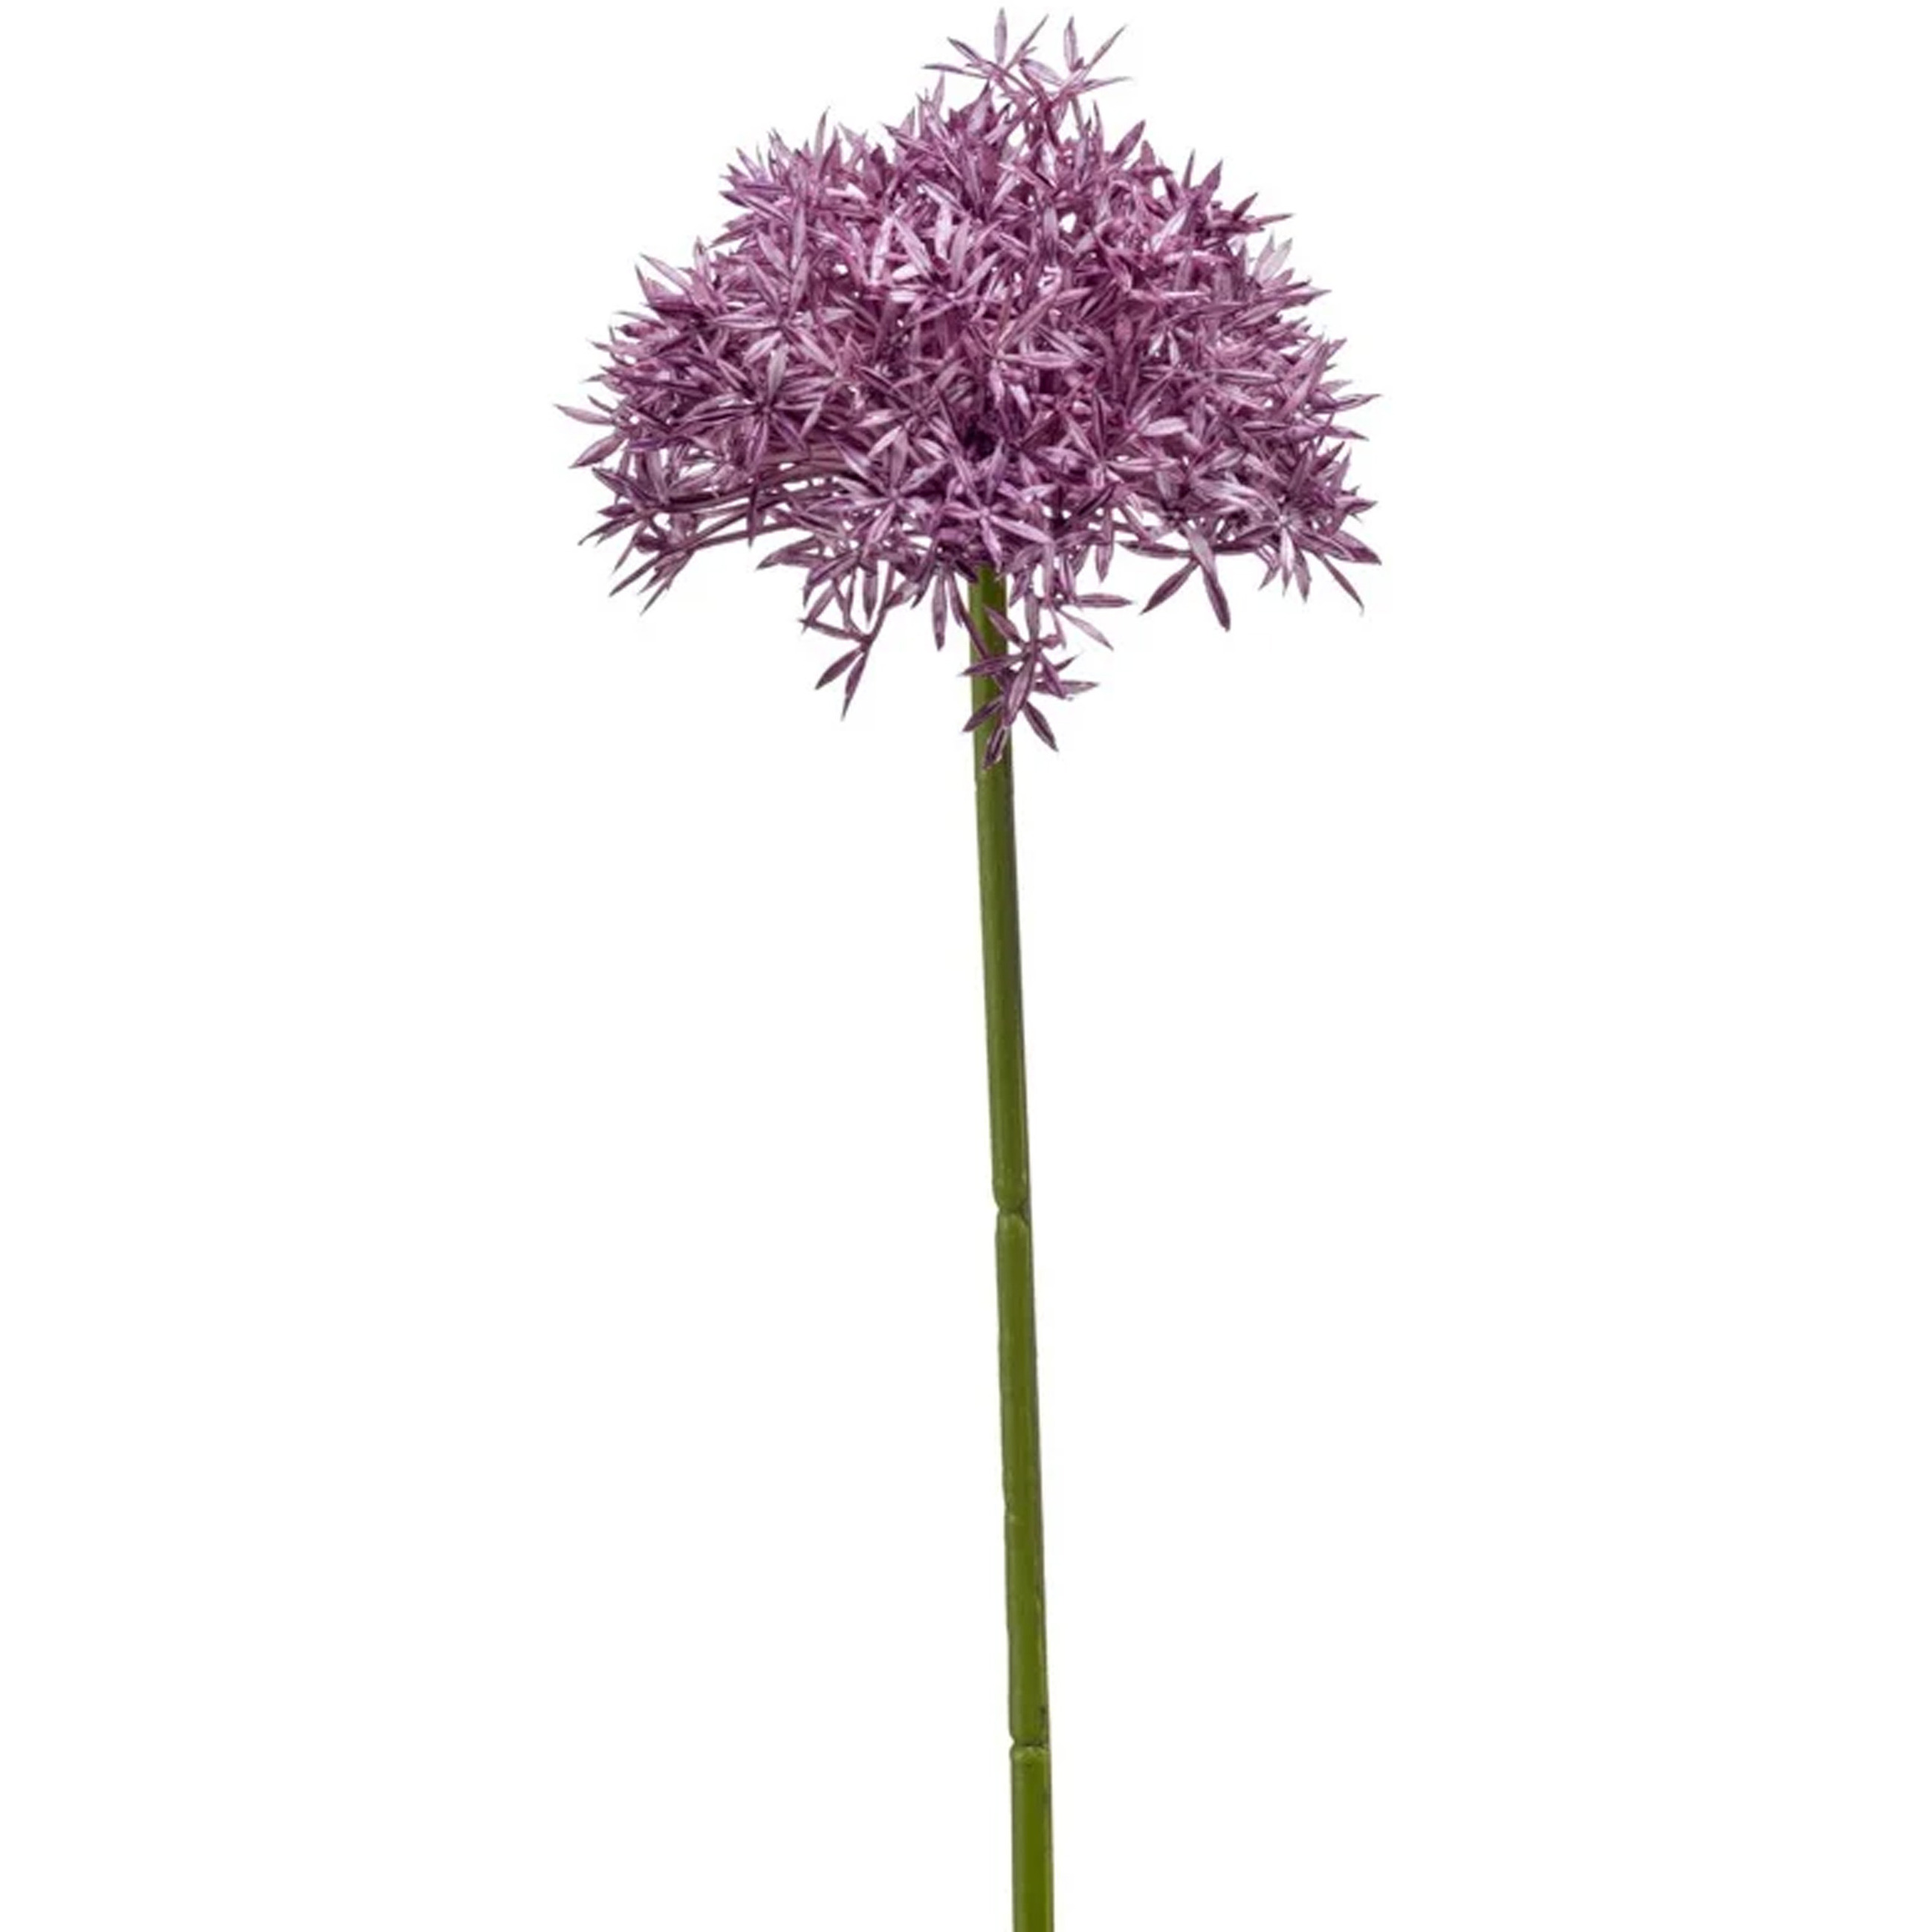 Allium-Sierui kunstbloem losse steel paars 62 cm Natuurlijke uitstraling